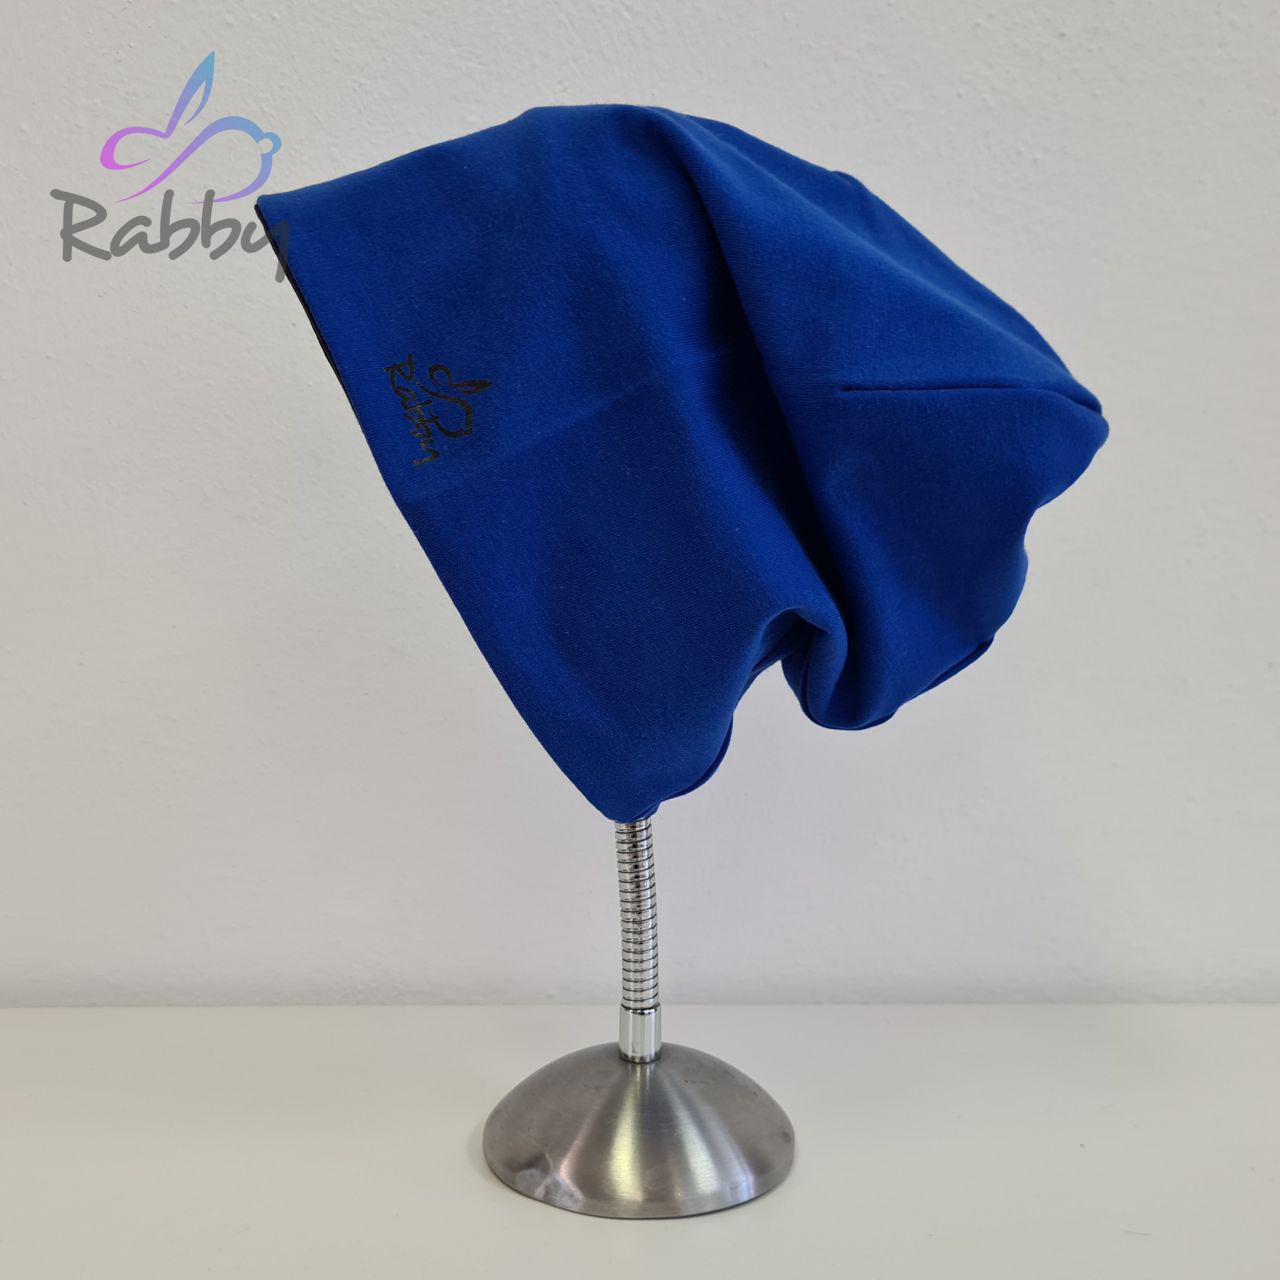 Homeless čepice pro dospělé královská modrá vel. 57 (obvod hlavy 56-59 cm)